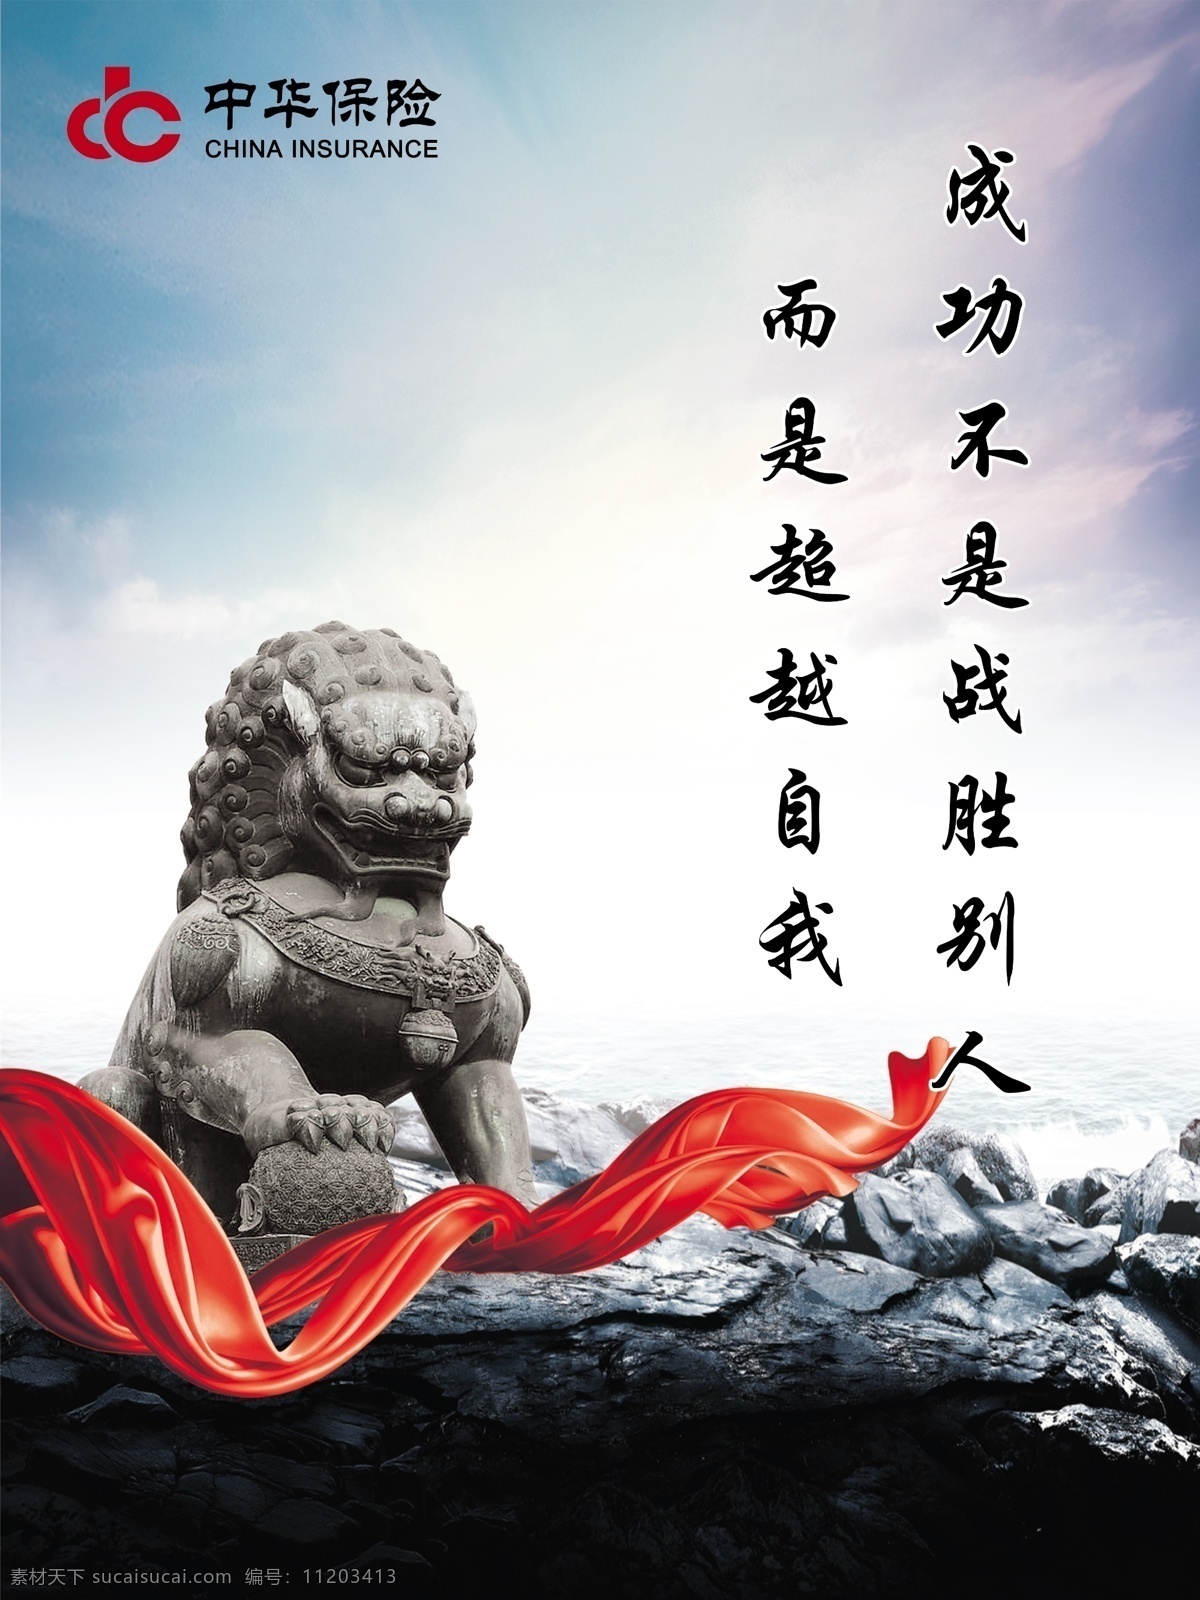 企业文化 石狮 狮子 飘带 红色 中华保险 标志 石头 海 石像 天空 广告设计模板 源文件